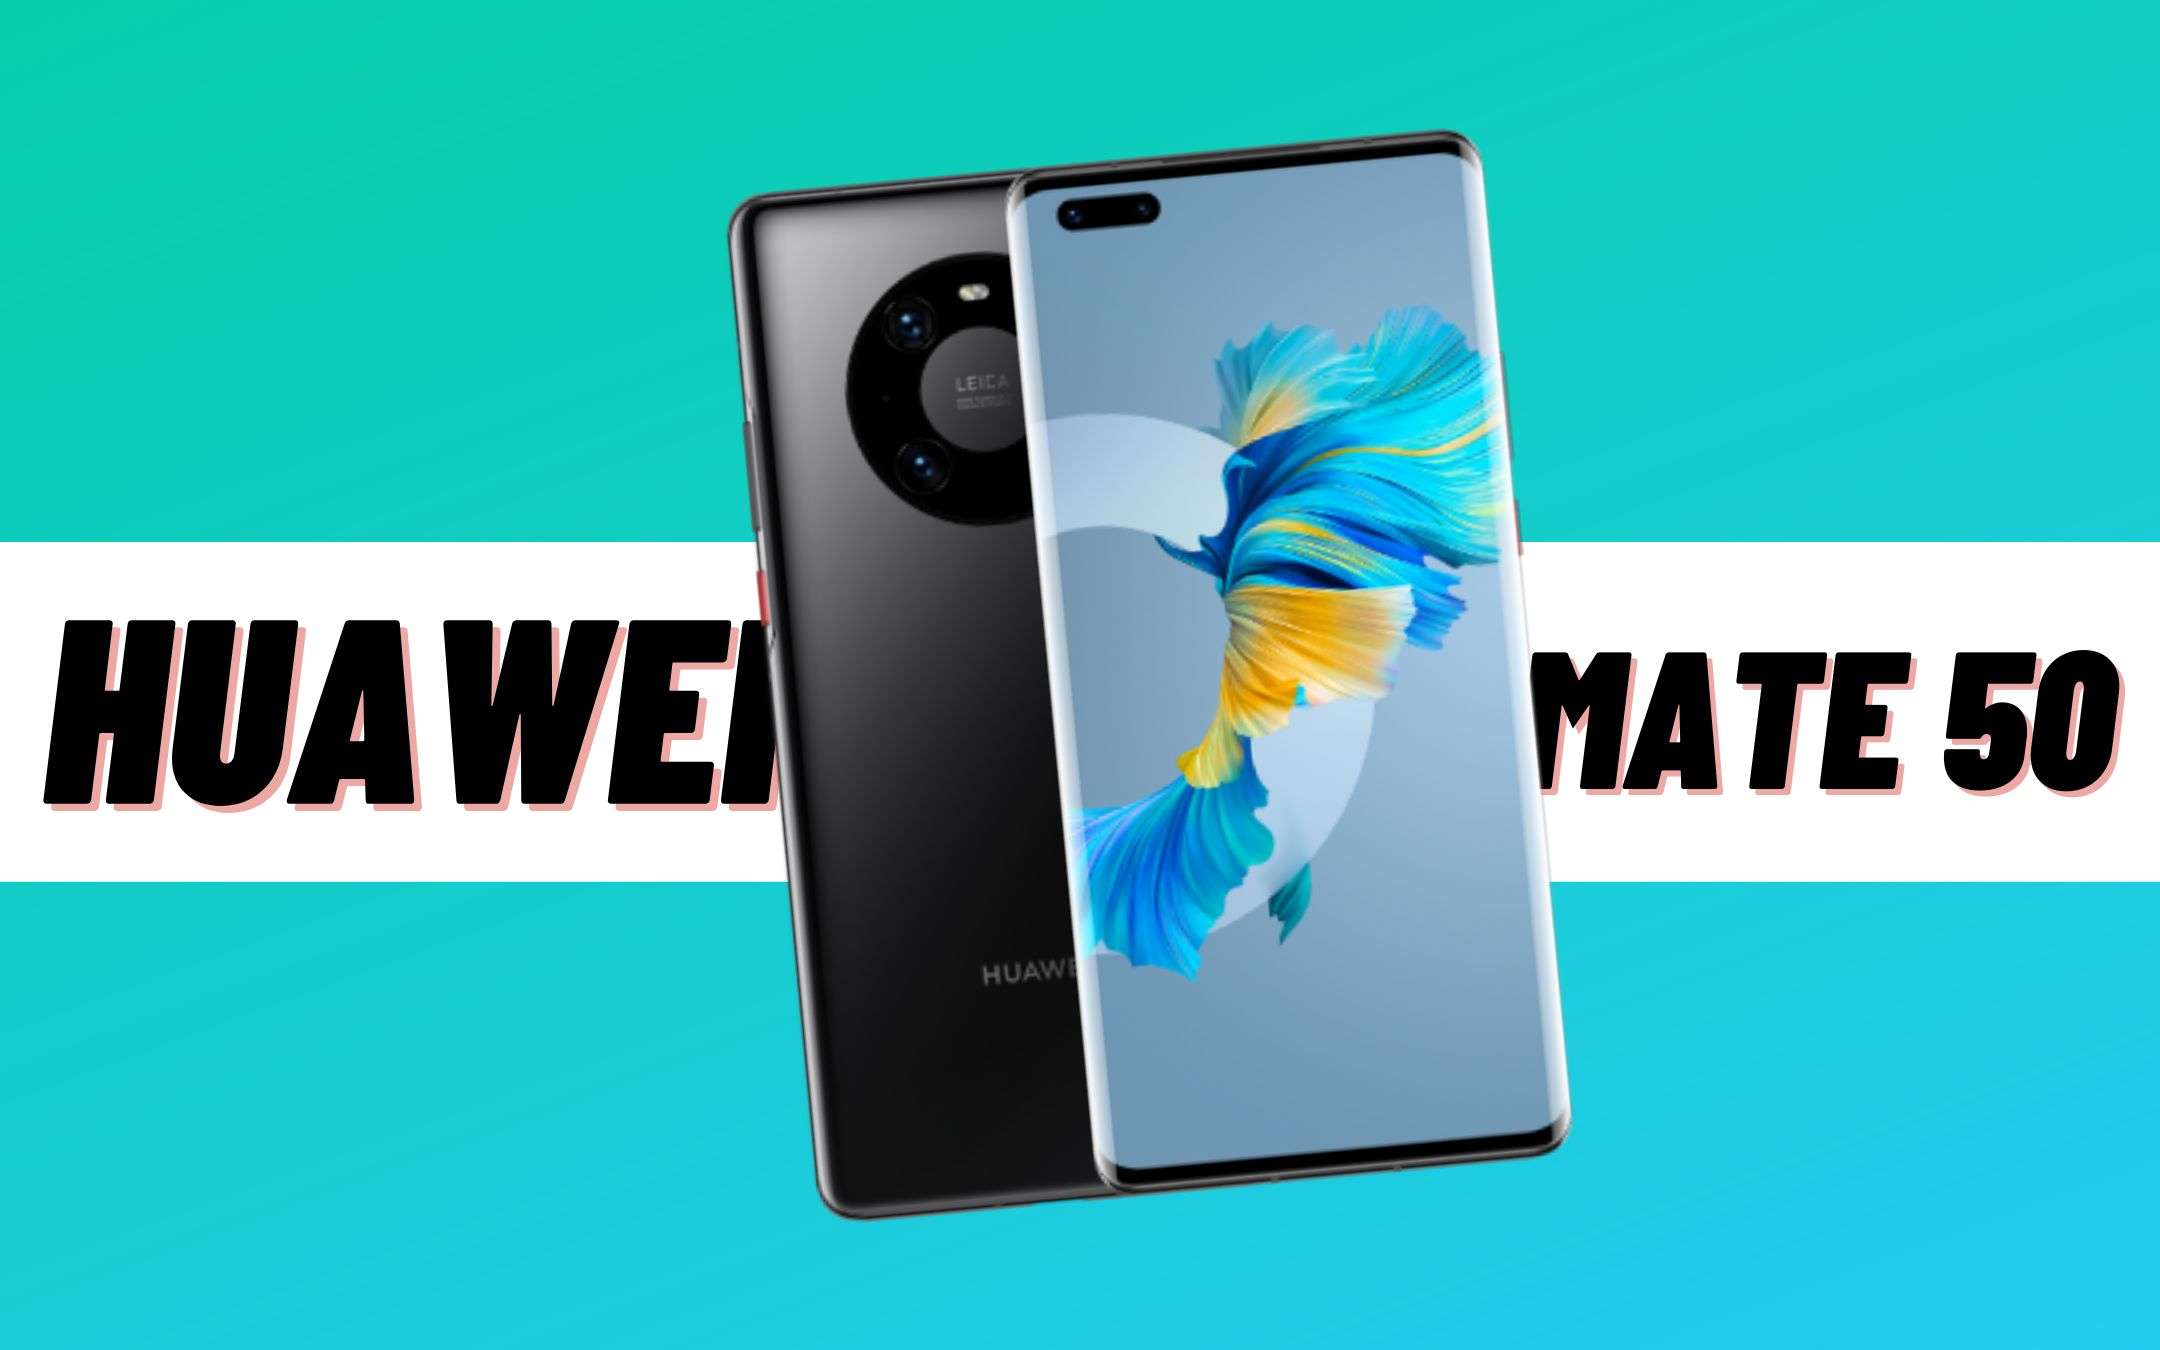 Huawei Mate 50 avrà il 5G? Sì, ma in un modo particolare!